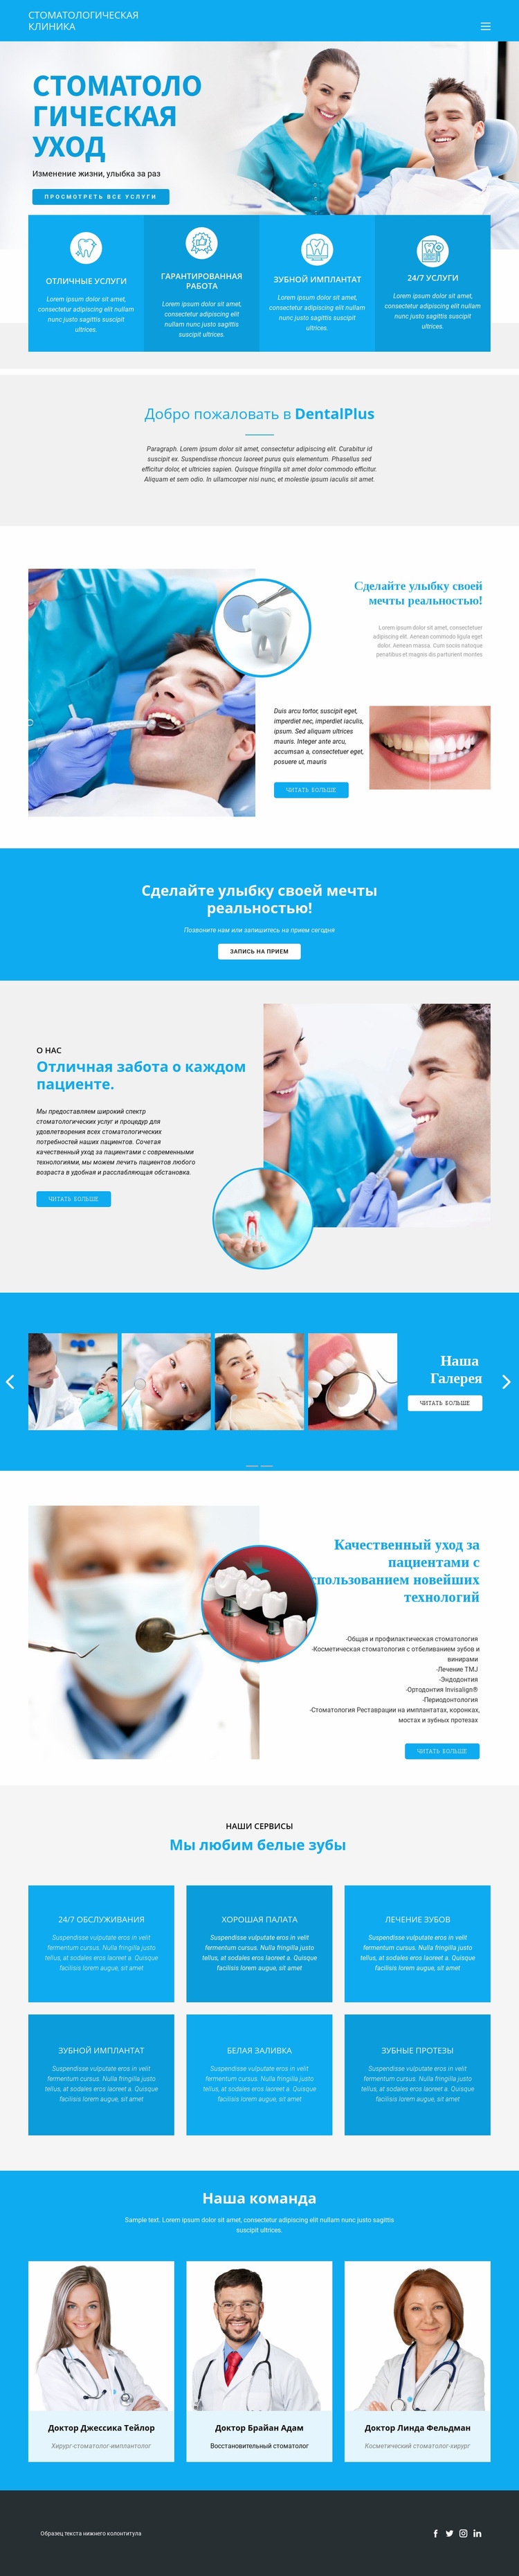 Стоматология и медицина HTML5 шаблон